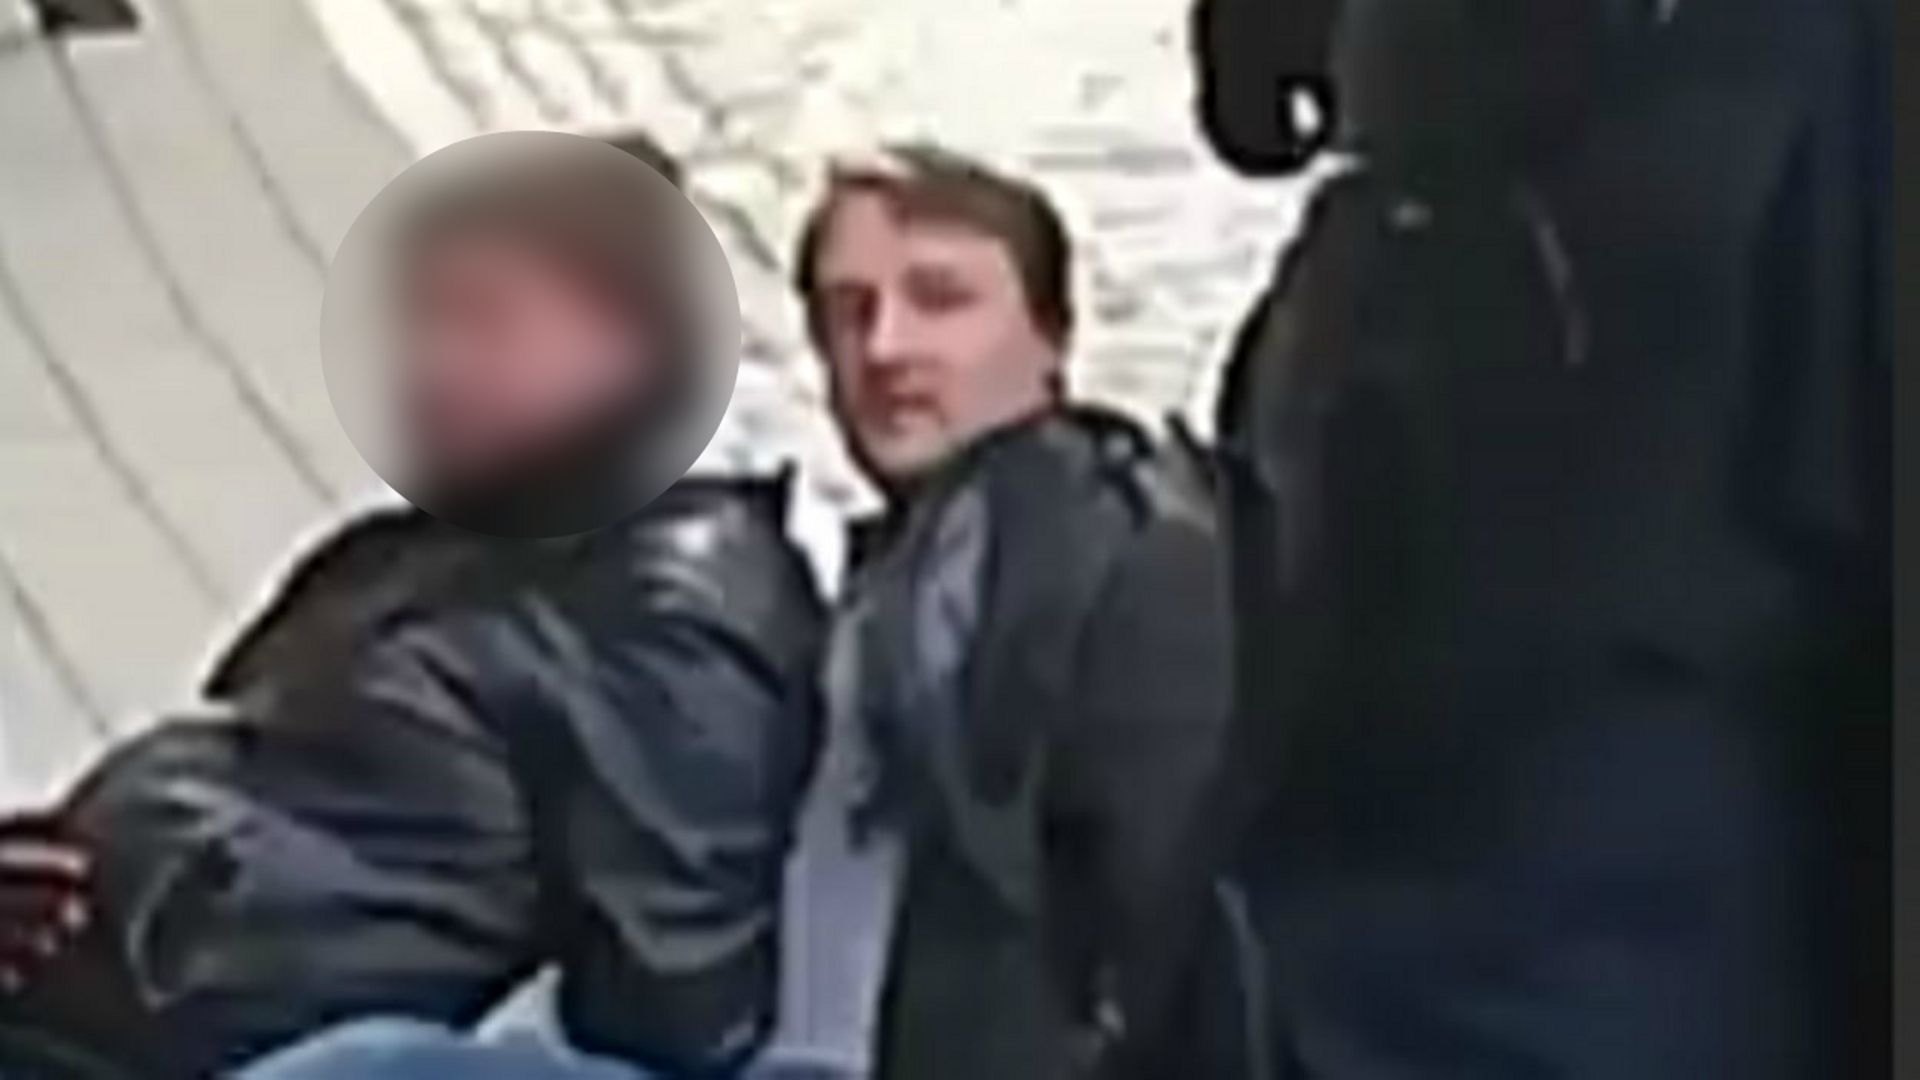 Un journaliste français arrêté en plein direct sur les gilets jaunes à Bruxelles, puis relâché sur ordre du bourgmestre